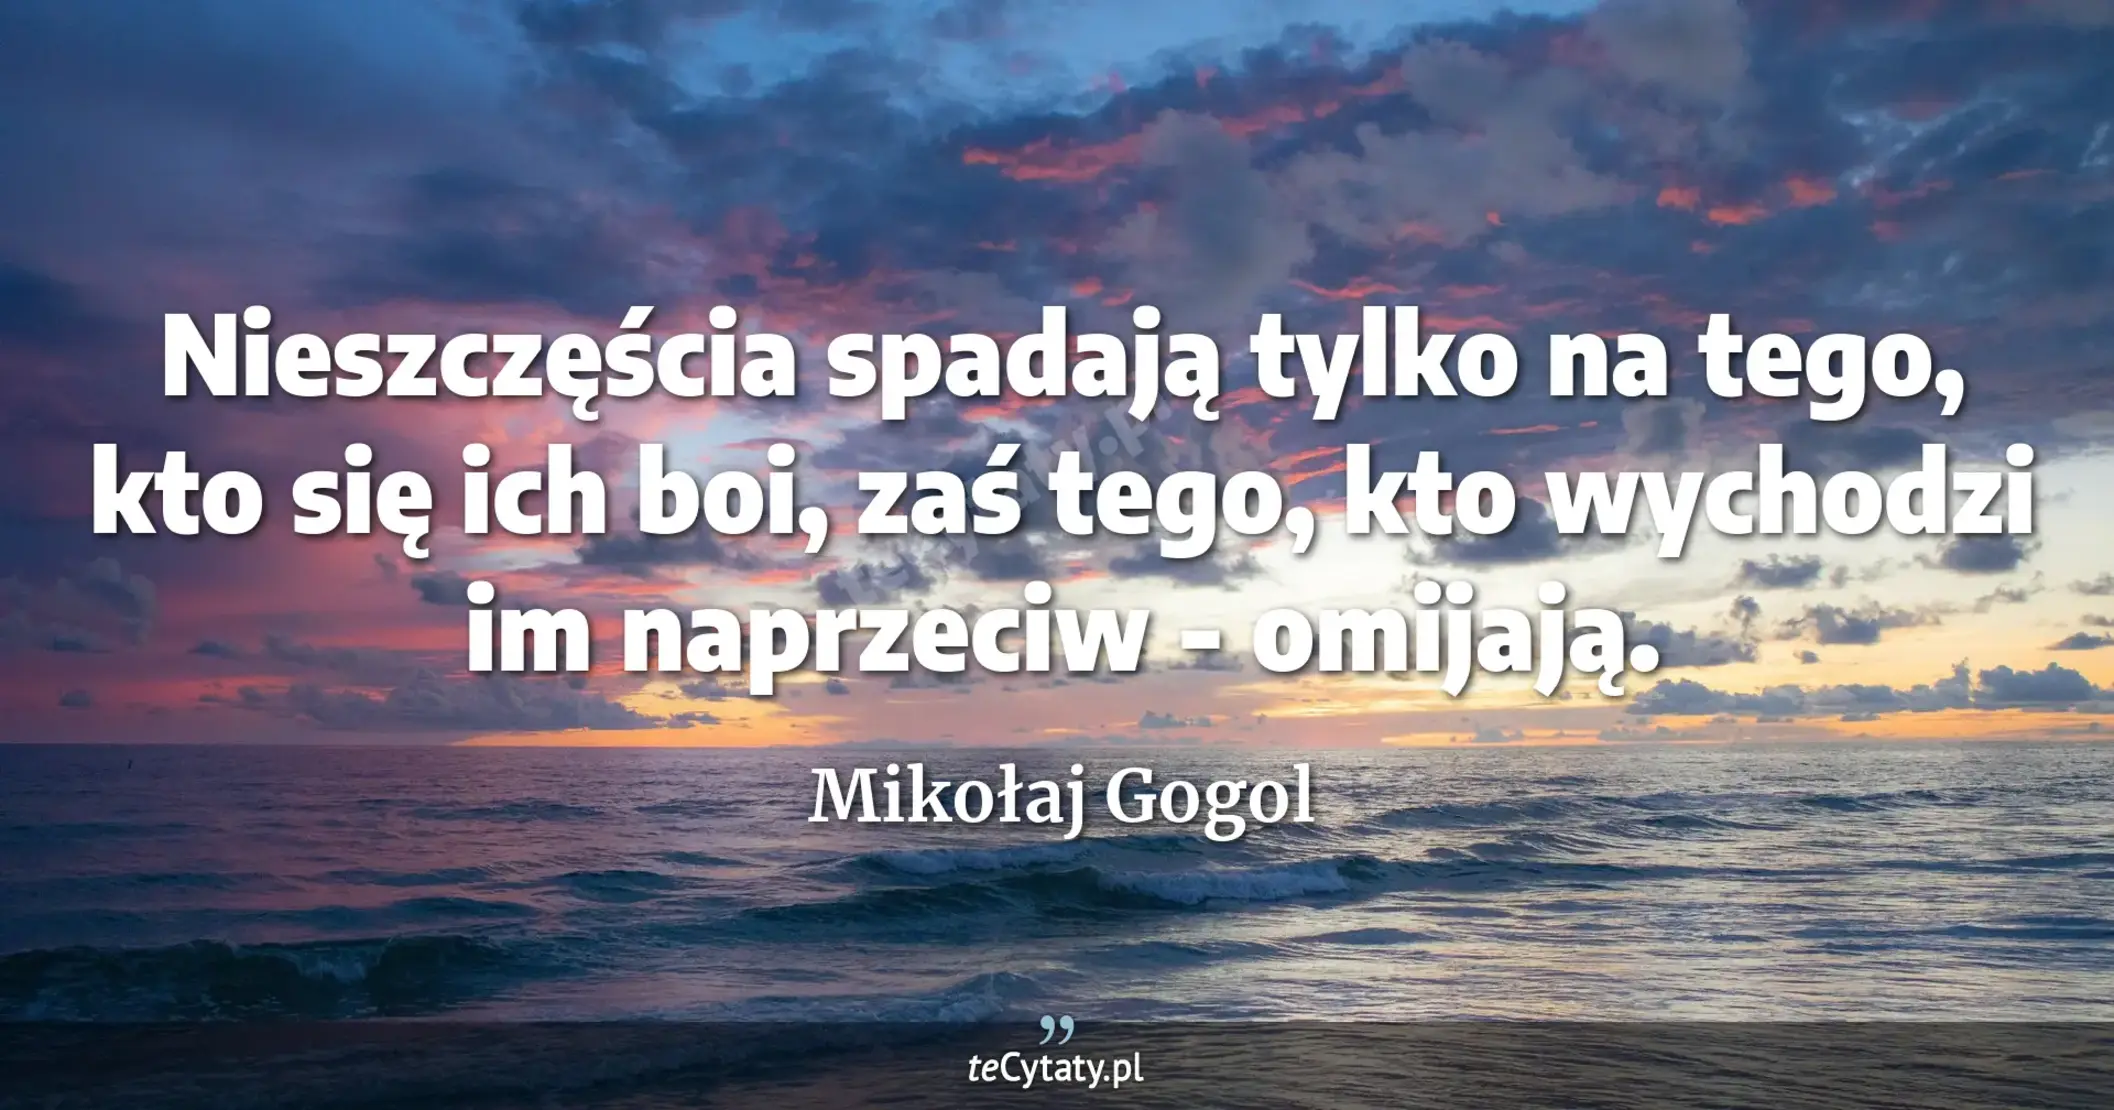 Nieszczęścia spadają tylko na tego, kto się ich boi, zaś tego, kto wychodzi im naprzeciw - omijają. - Mikołaj Gogol